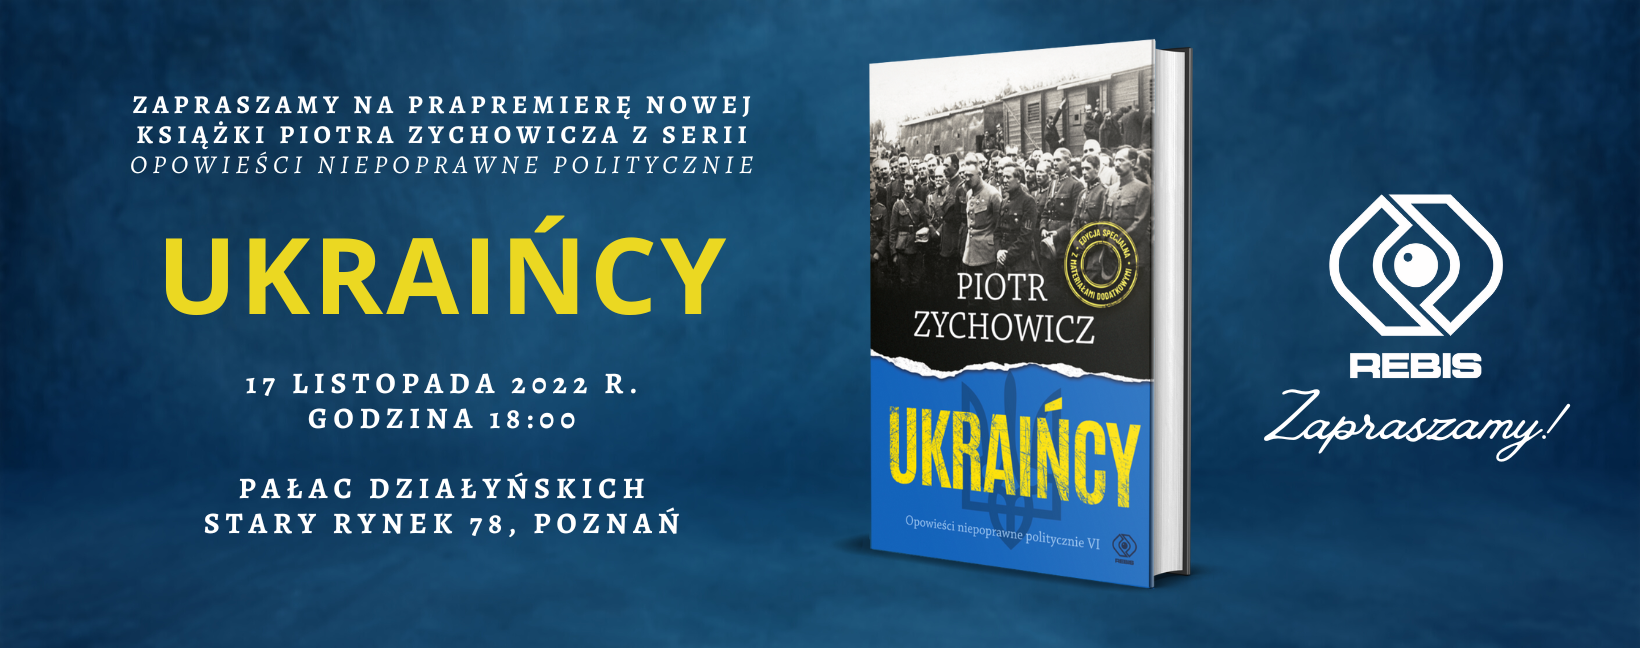 Prapremiera książki "Ukraińcy" Piotra Zychowicza - zapraszamy!